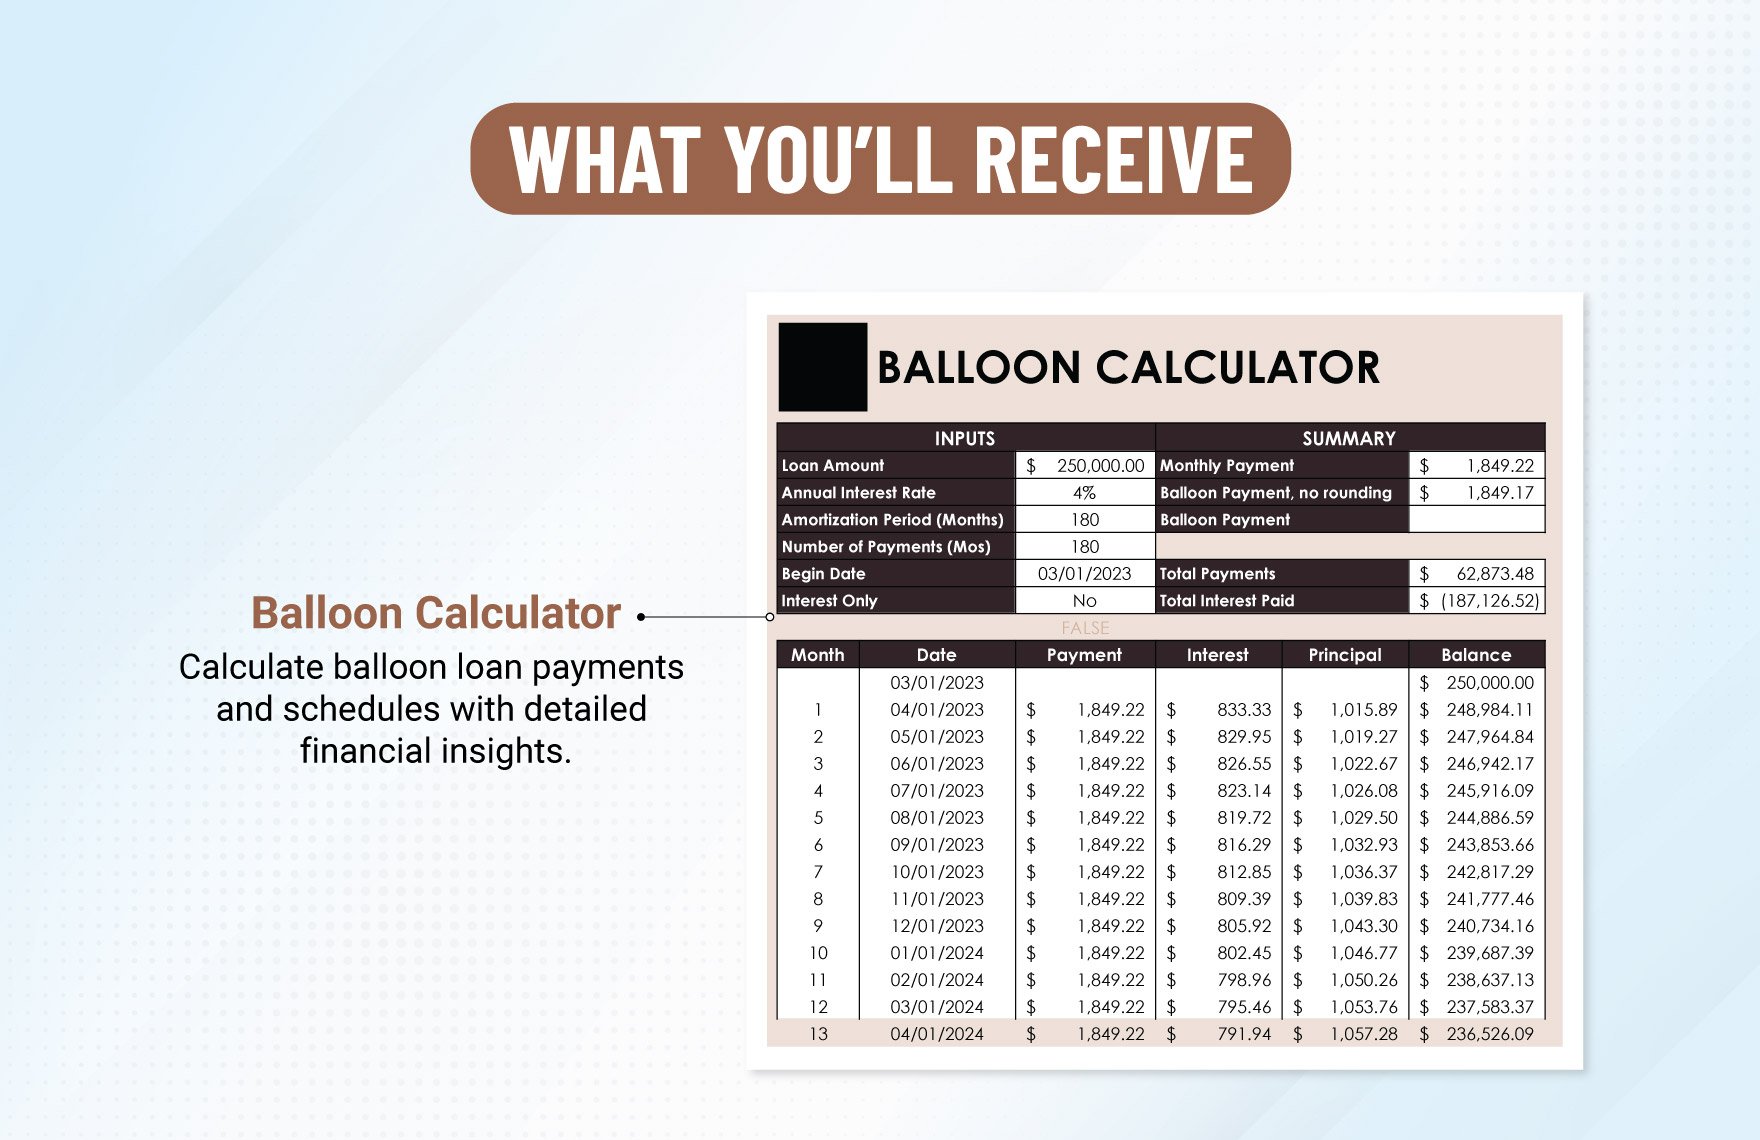 Balloon Loan Calculator